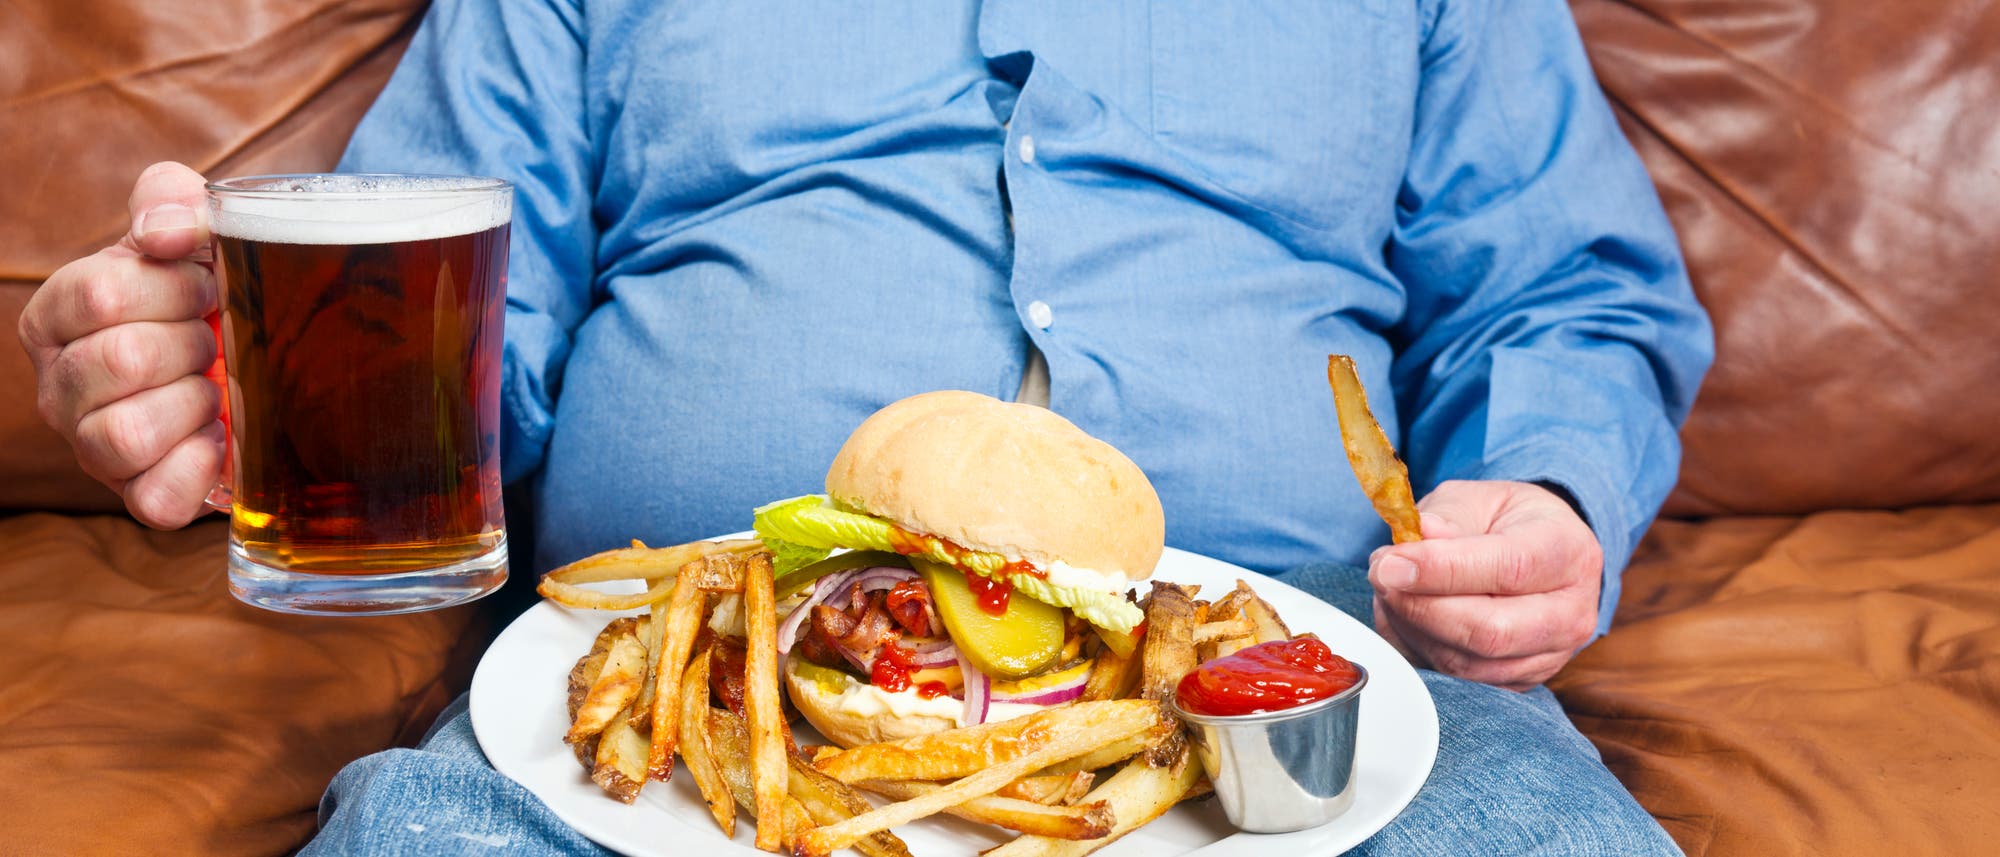 Übergewichtiger Mann isst Burger